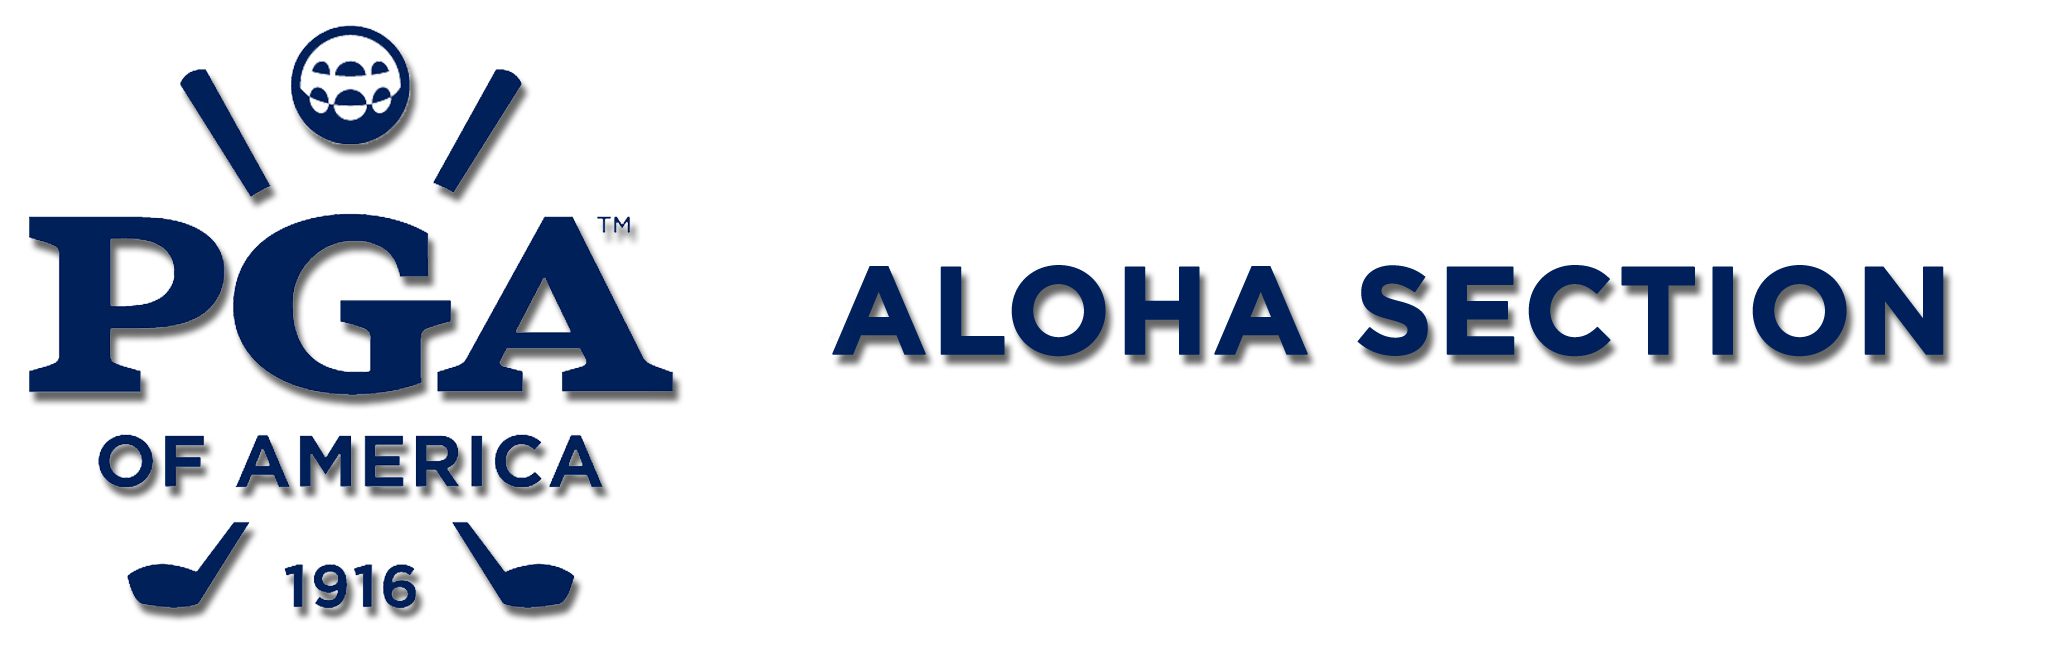 Aloha Section